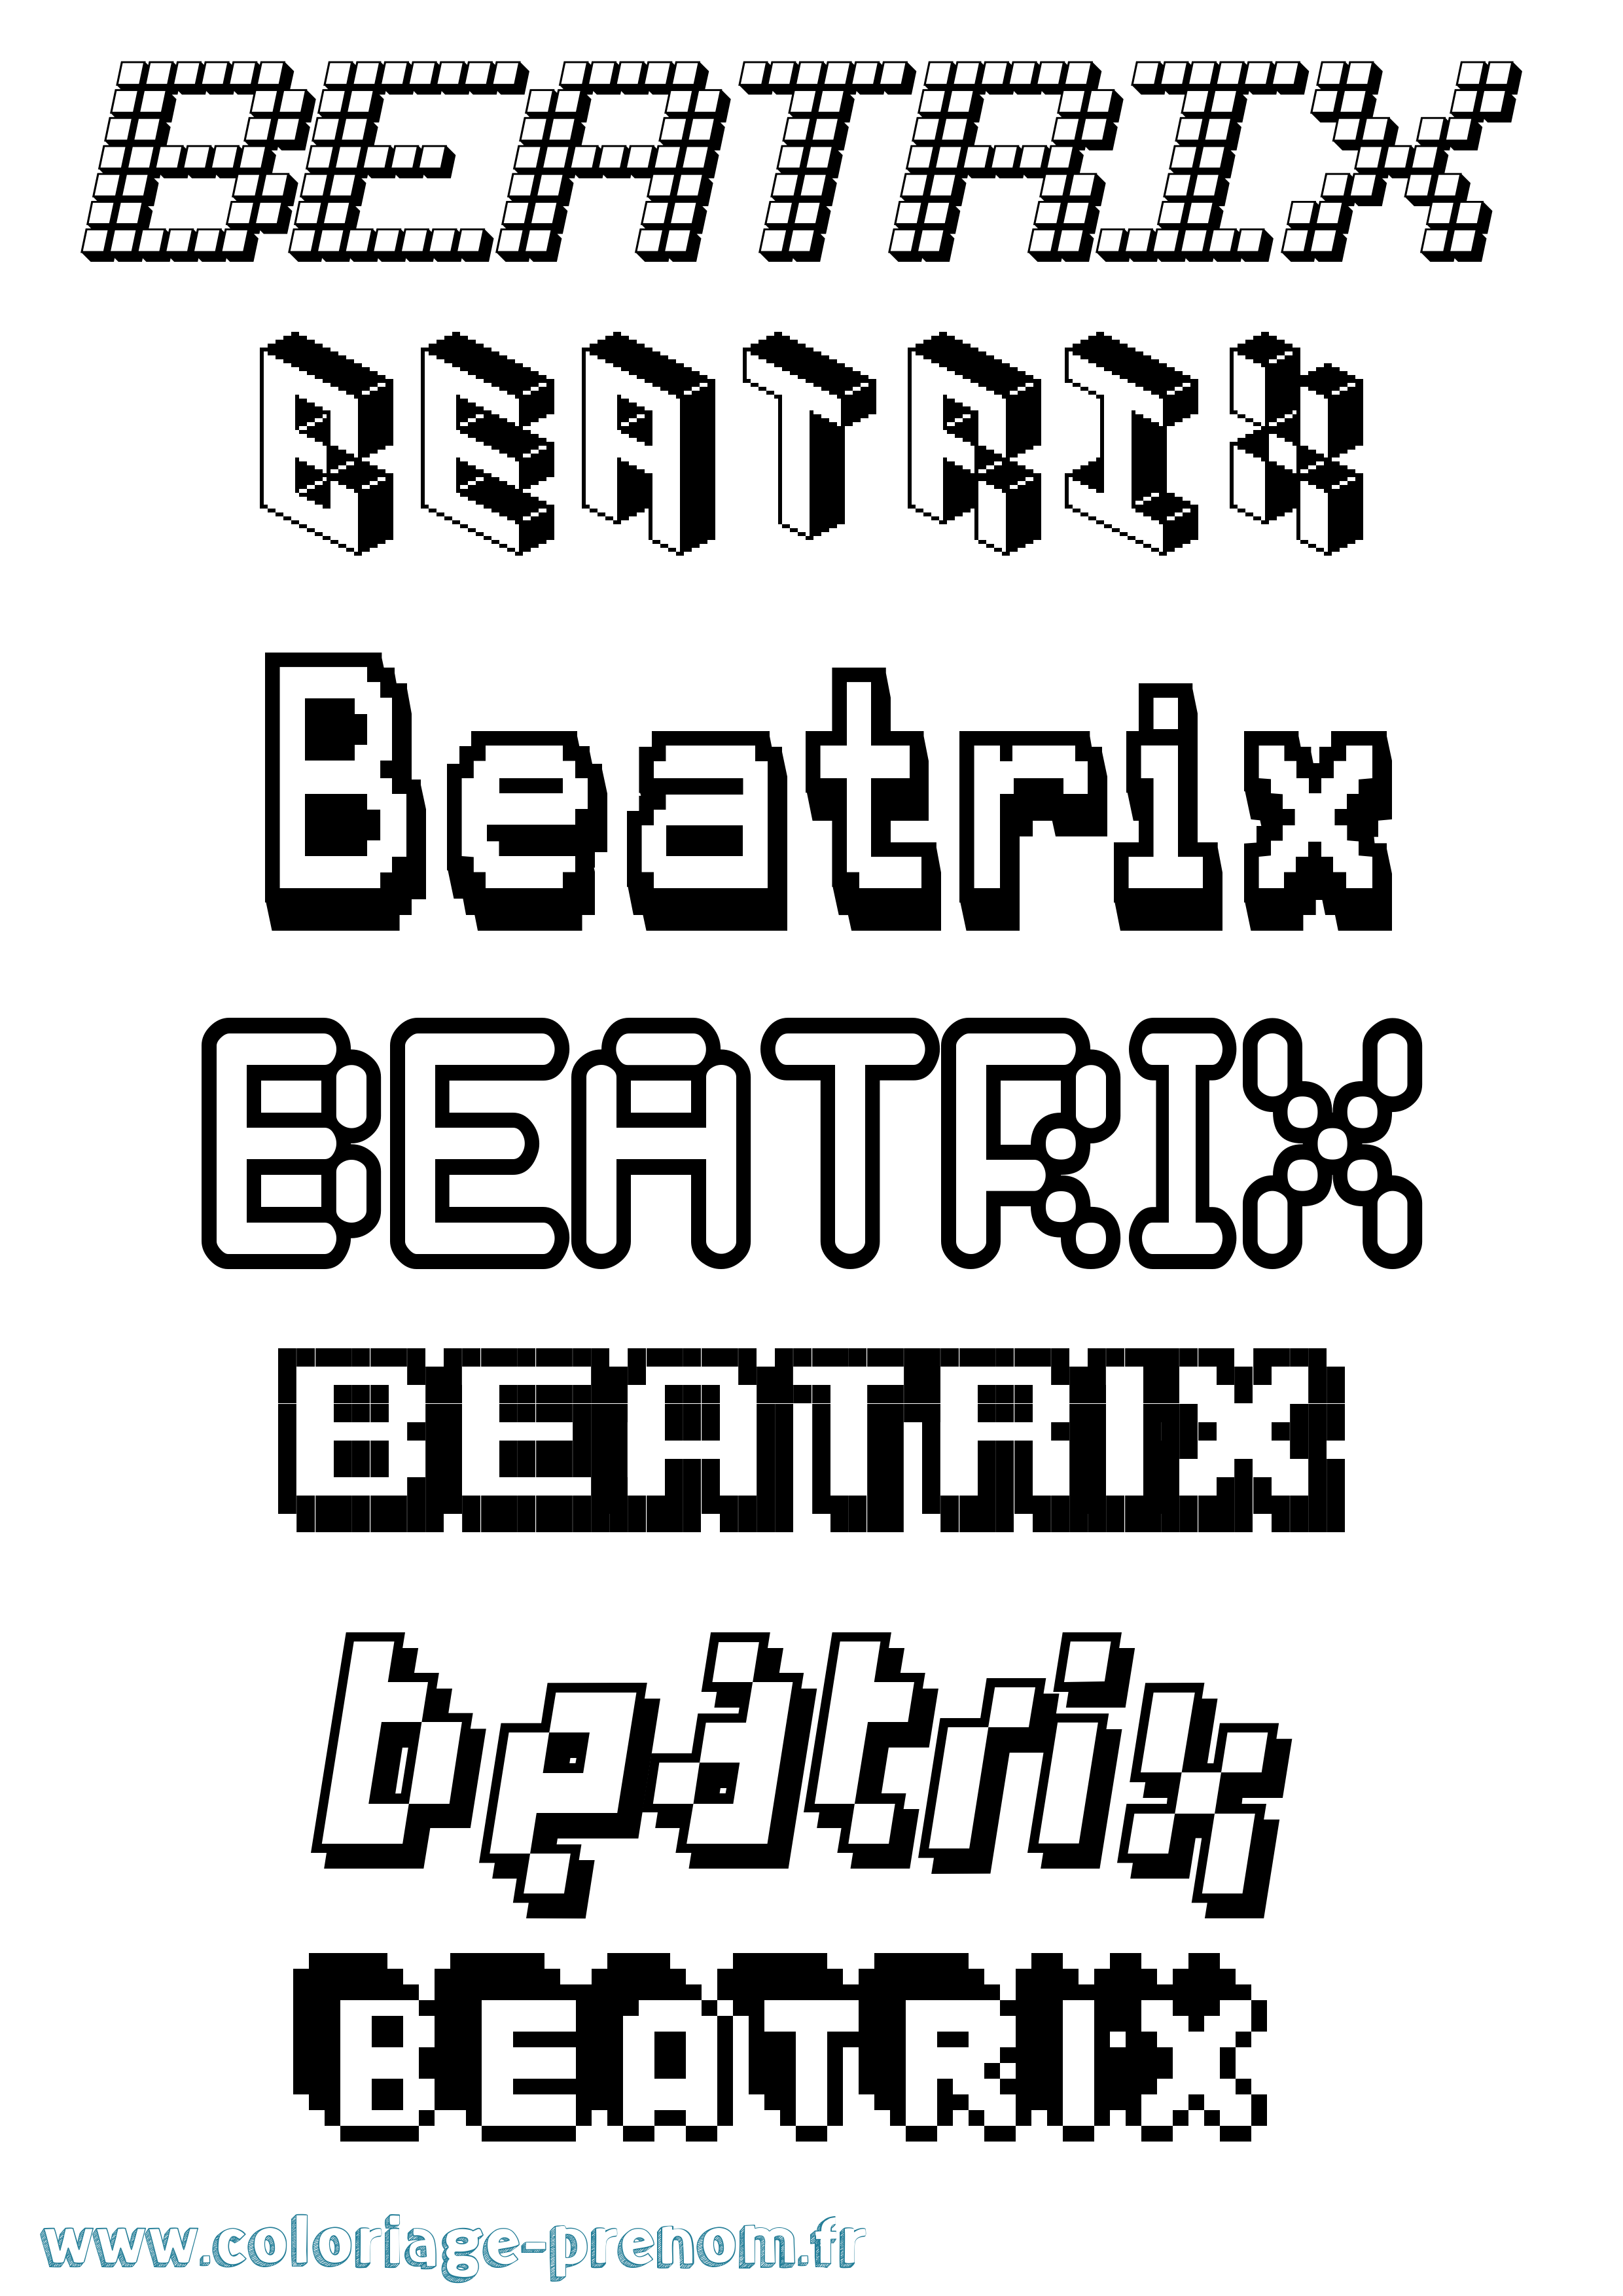 Coloriage prénom Beatrix Pixel